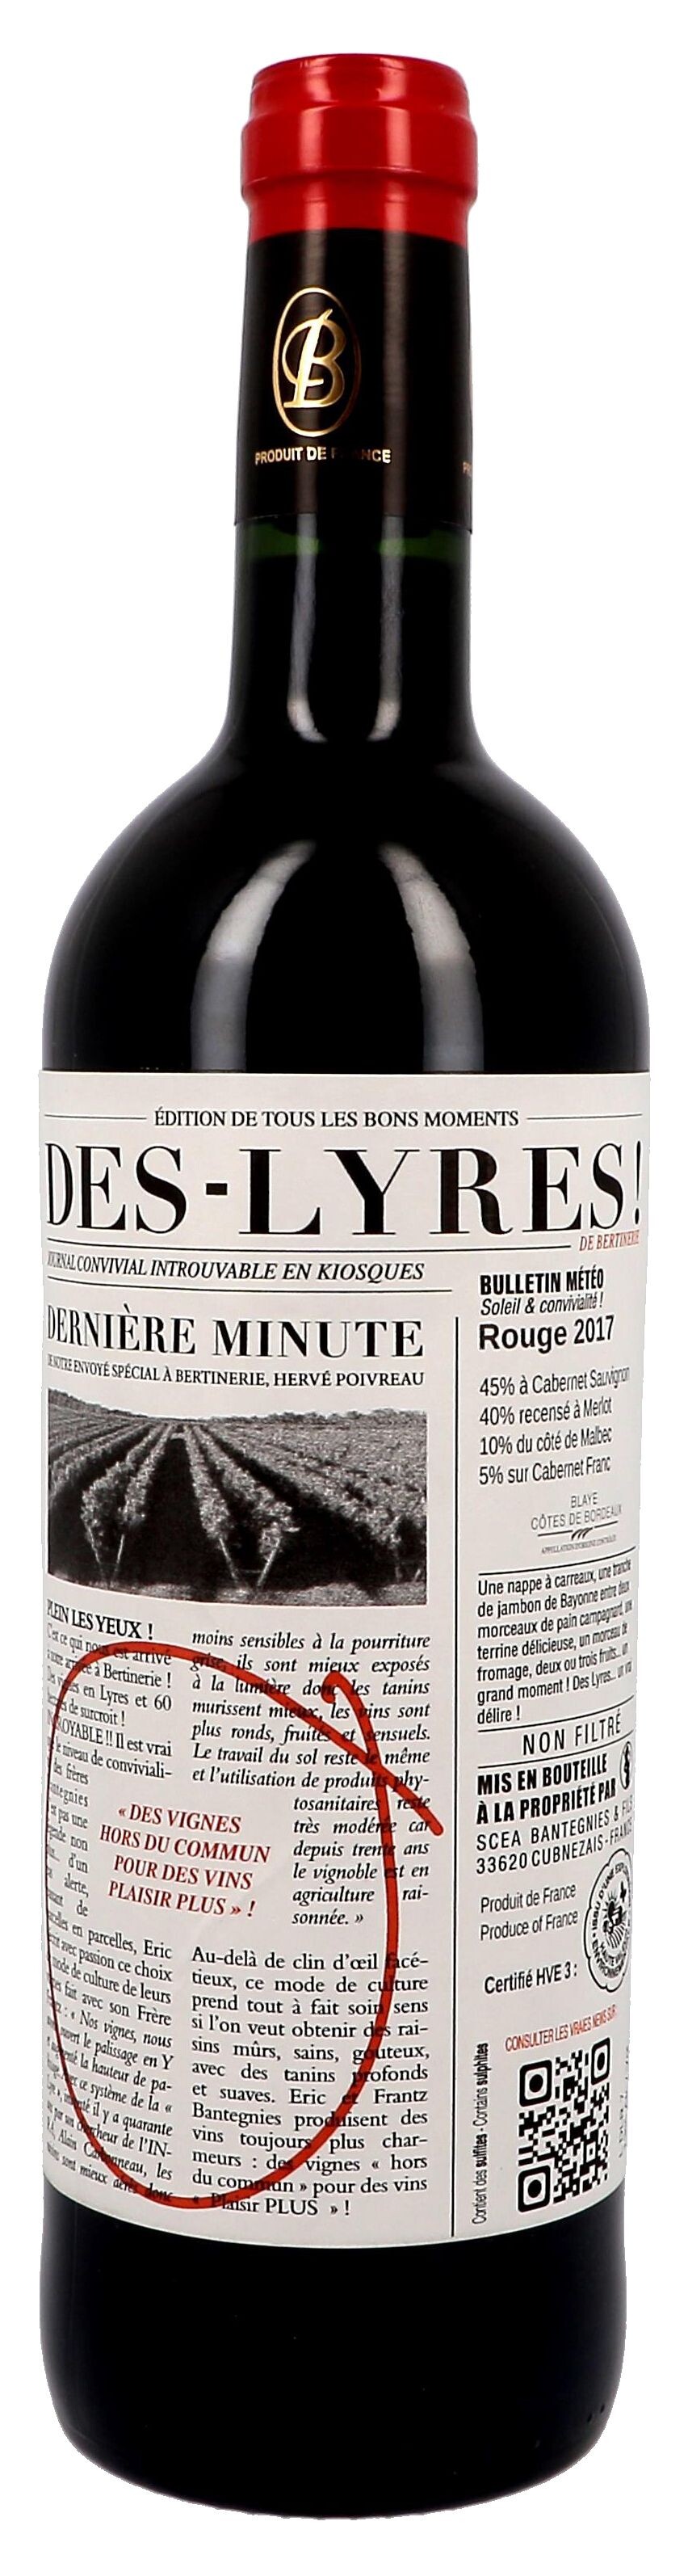 Des-Lyres de Bertinerie rood 75cl Blaye Cotes de Bordeaux